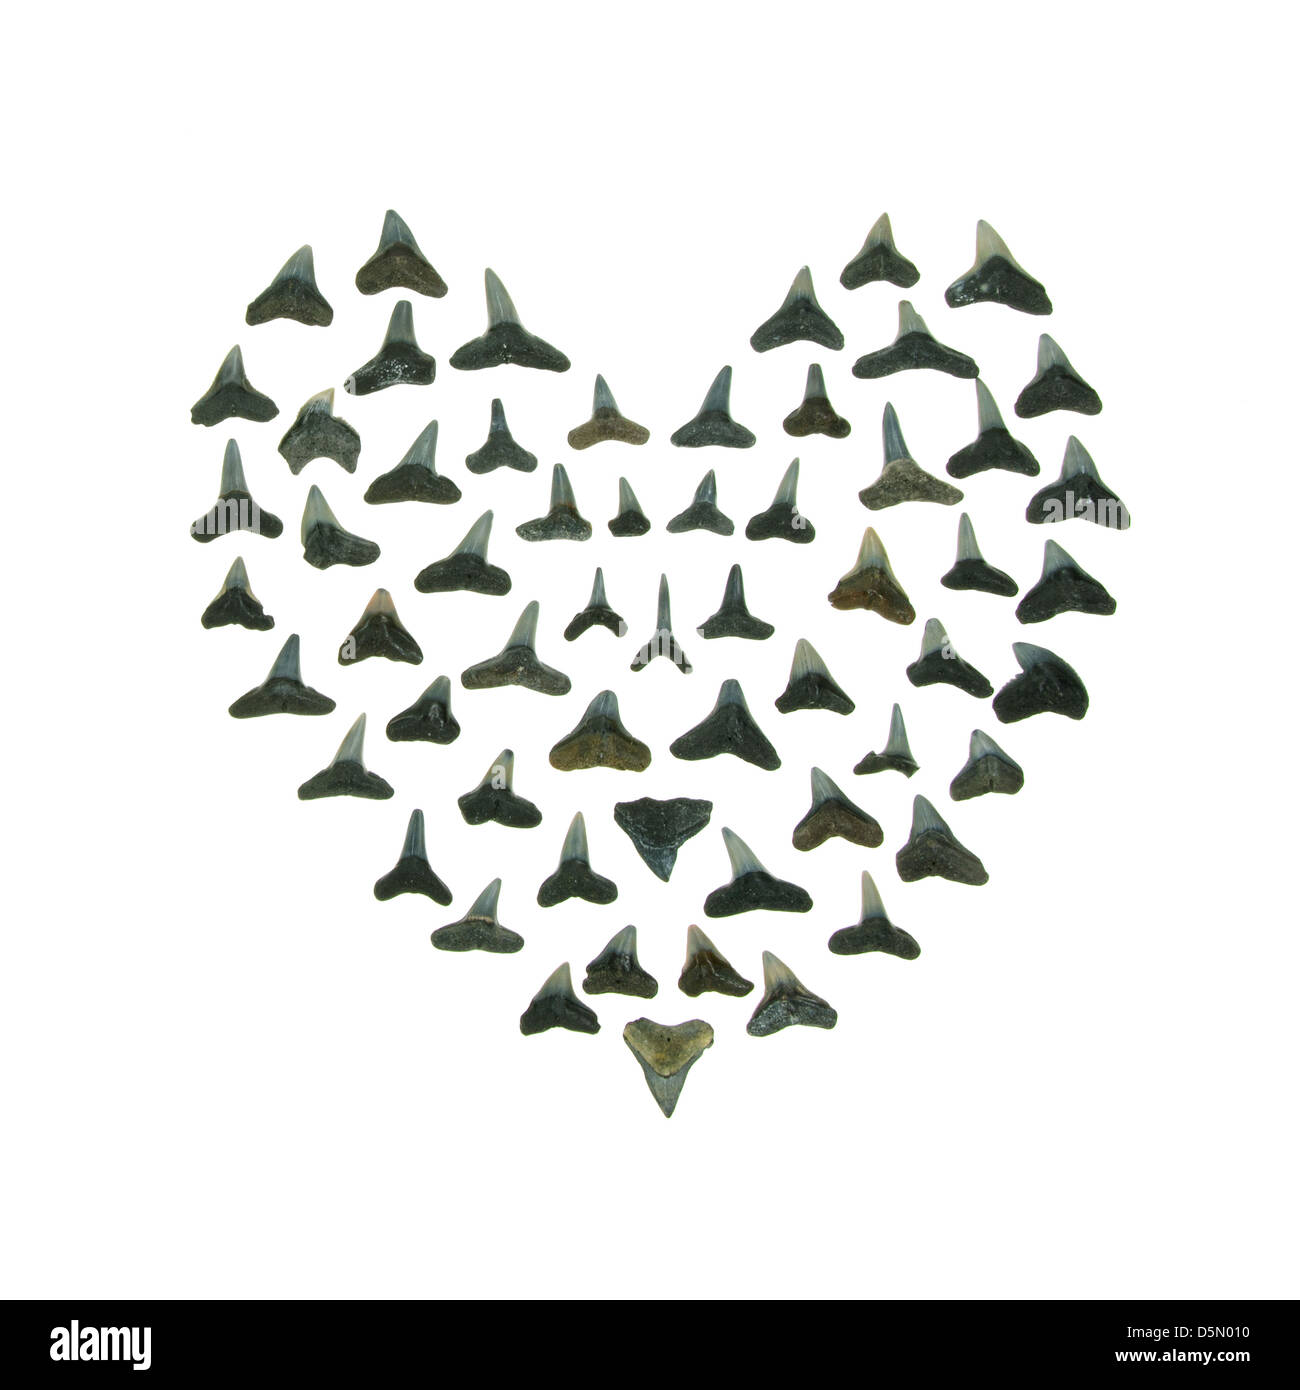 Ein Herz aus Haien Zähne - ein Punk-Remake von der traditionellen Sailors Valentine gebildet. Stockfoto